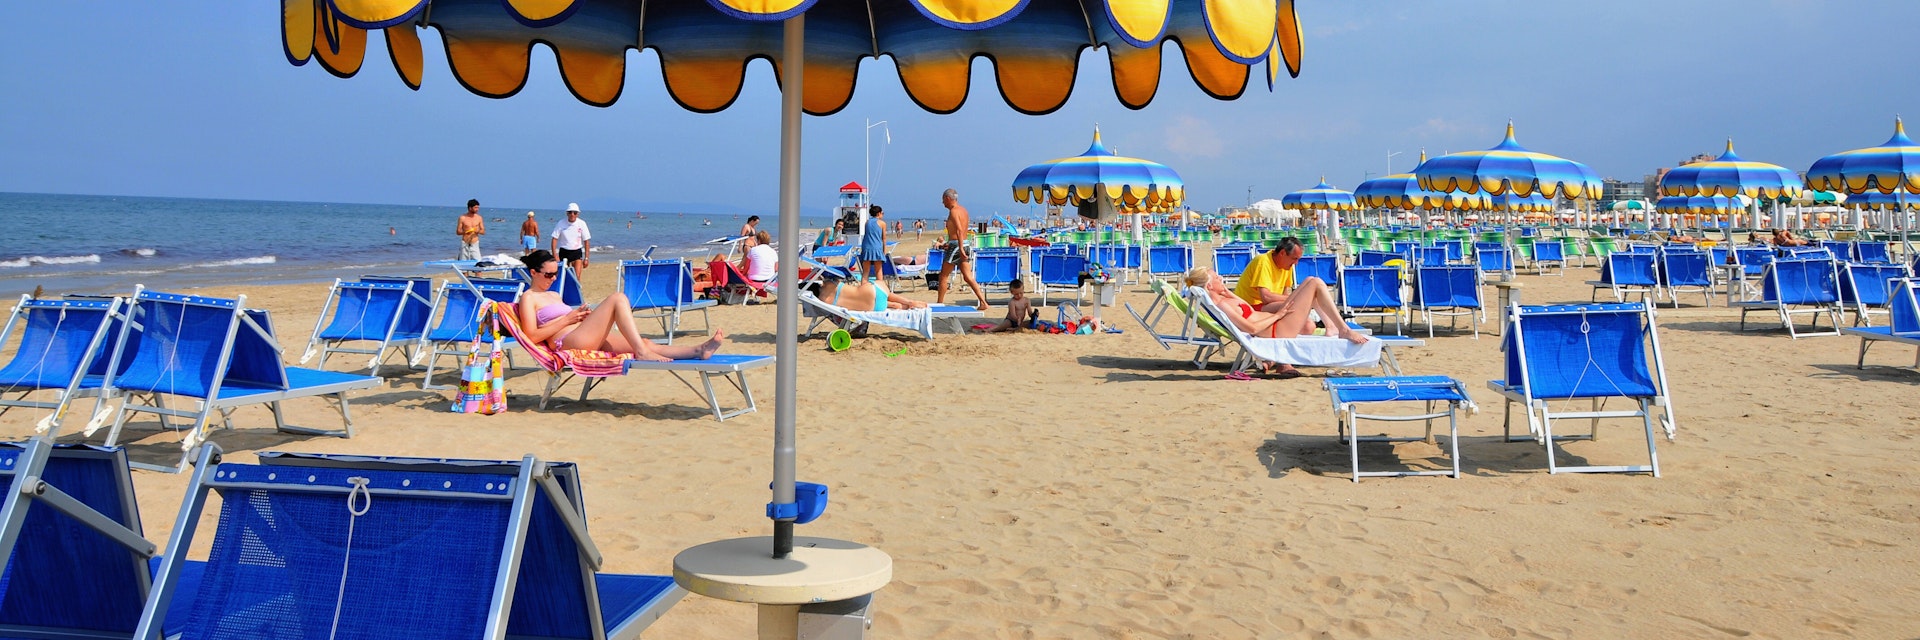 People on the beach, Rimini along the Adriatic coast, Emilia-Romagna, Italy